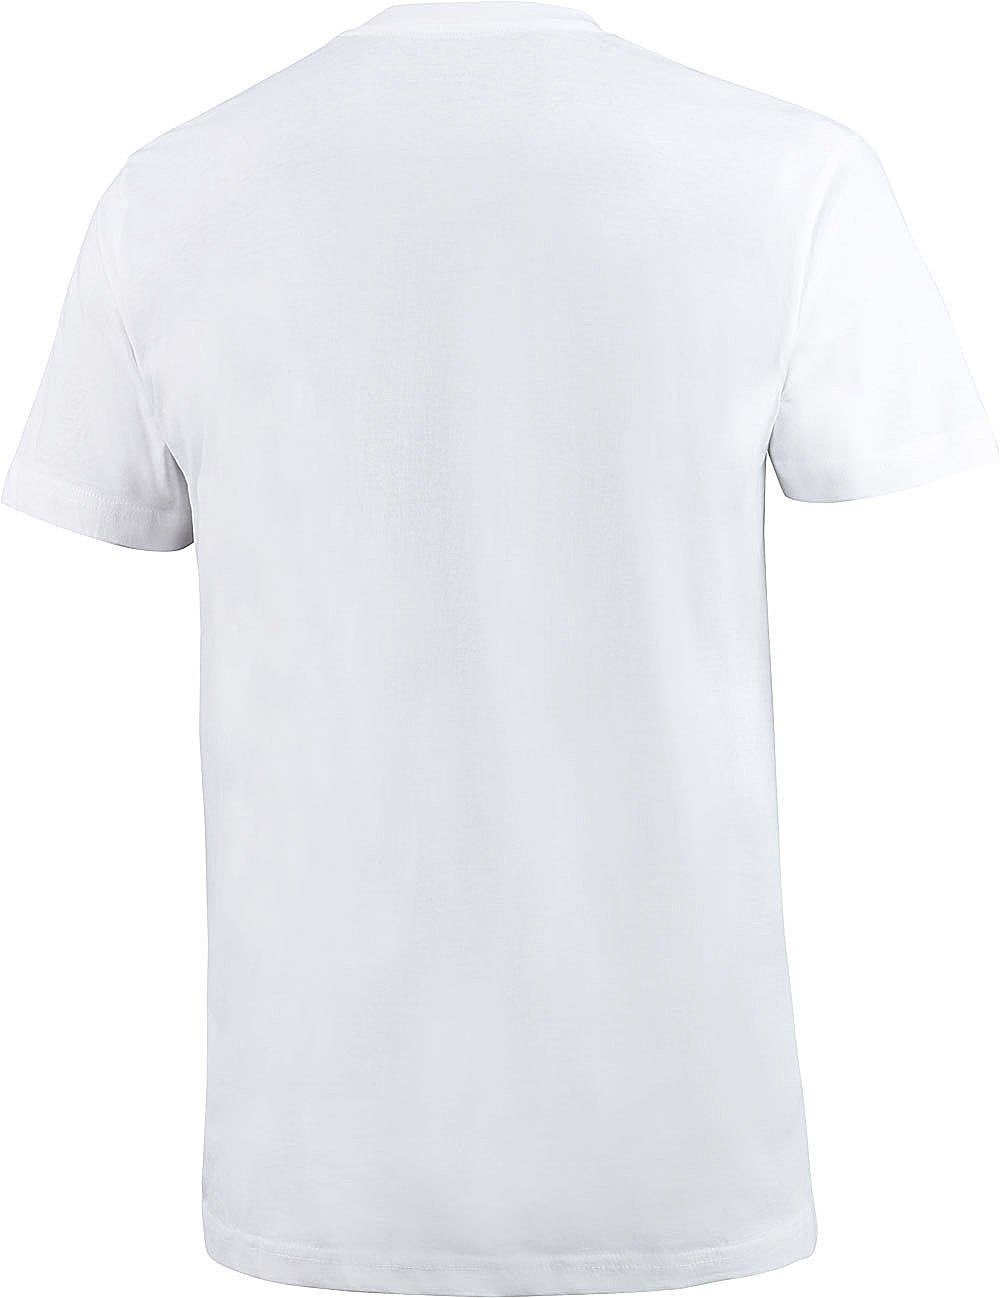 T-Shirt reiner (5er-Pack) hochwertiger, Kern Otto Baumwolle aus Kurzarmshirt Kern weiß